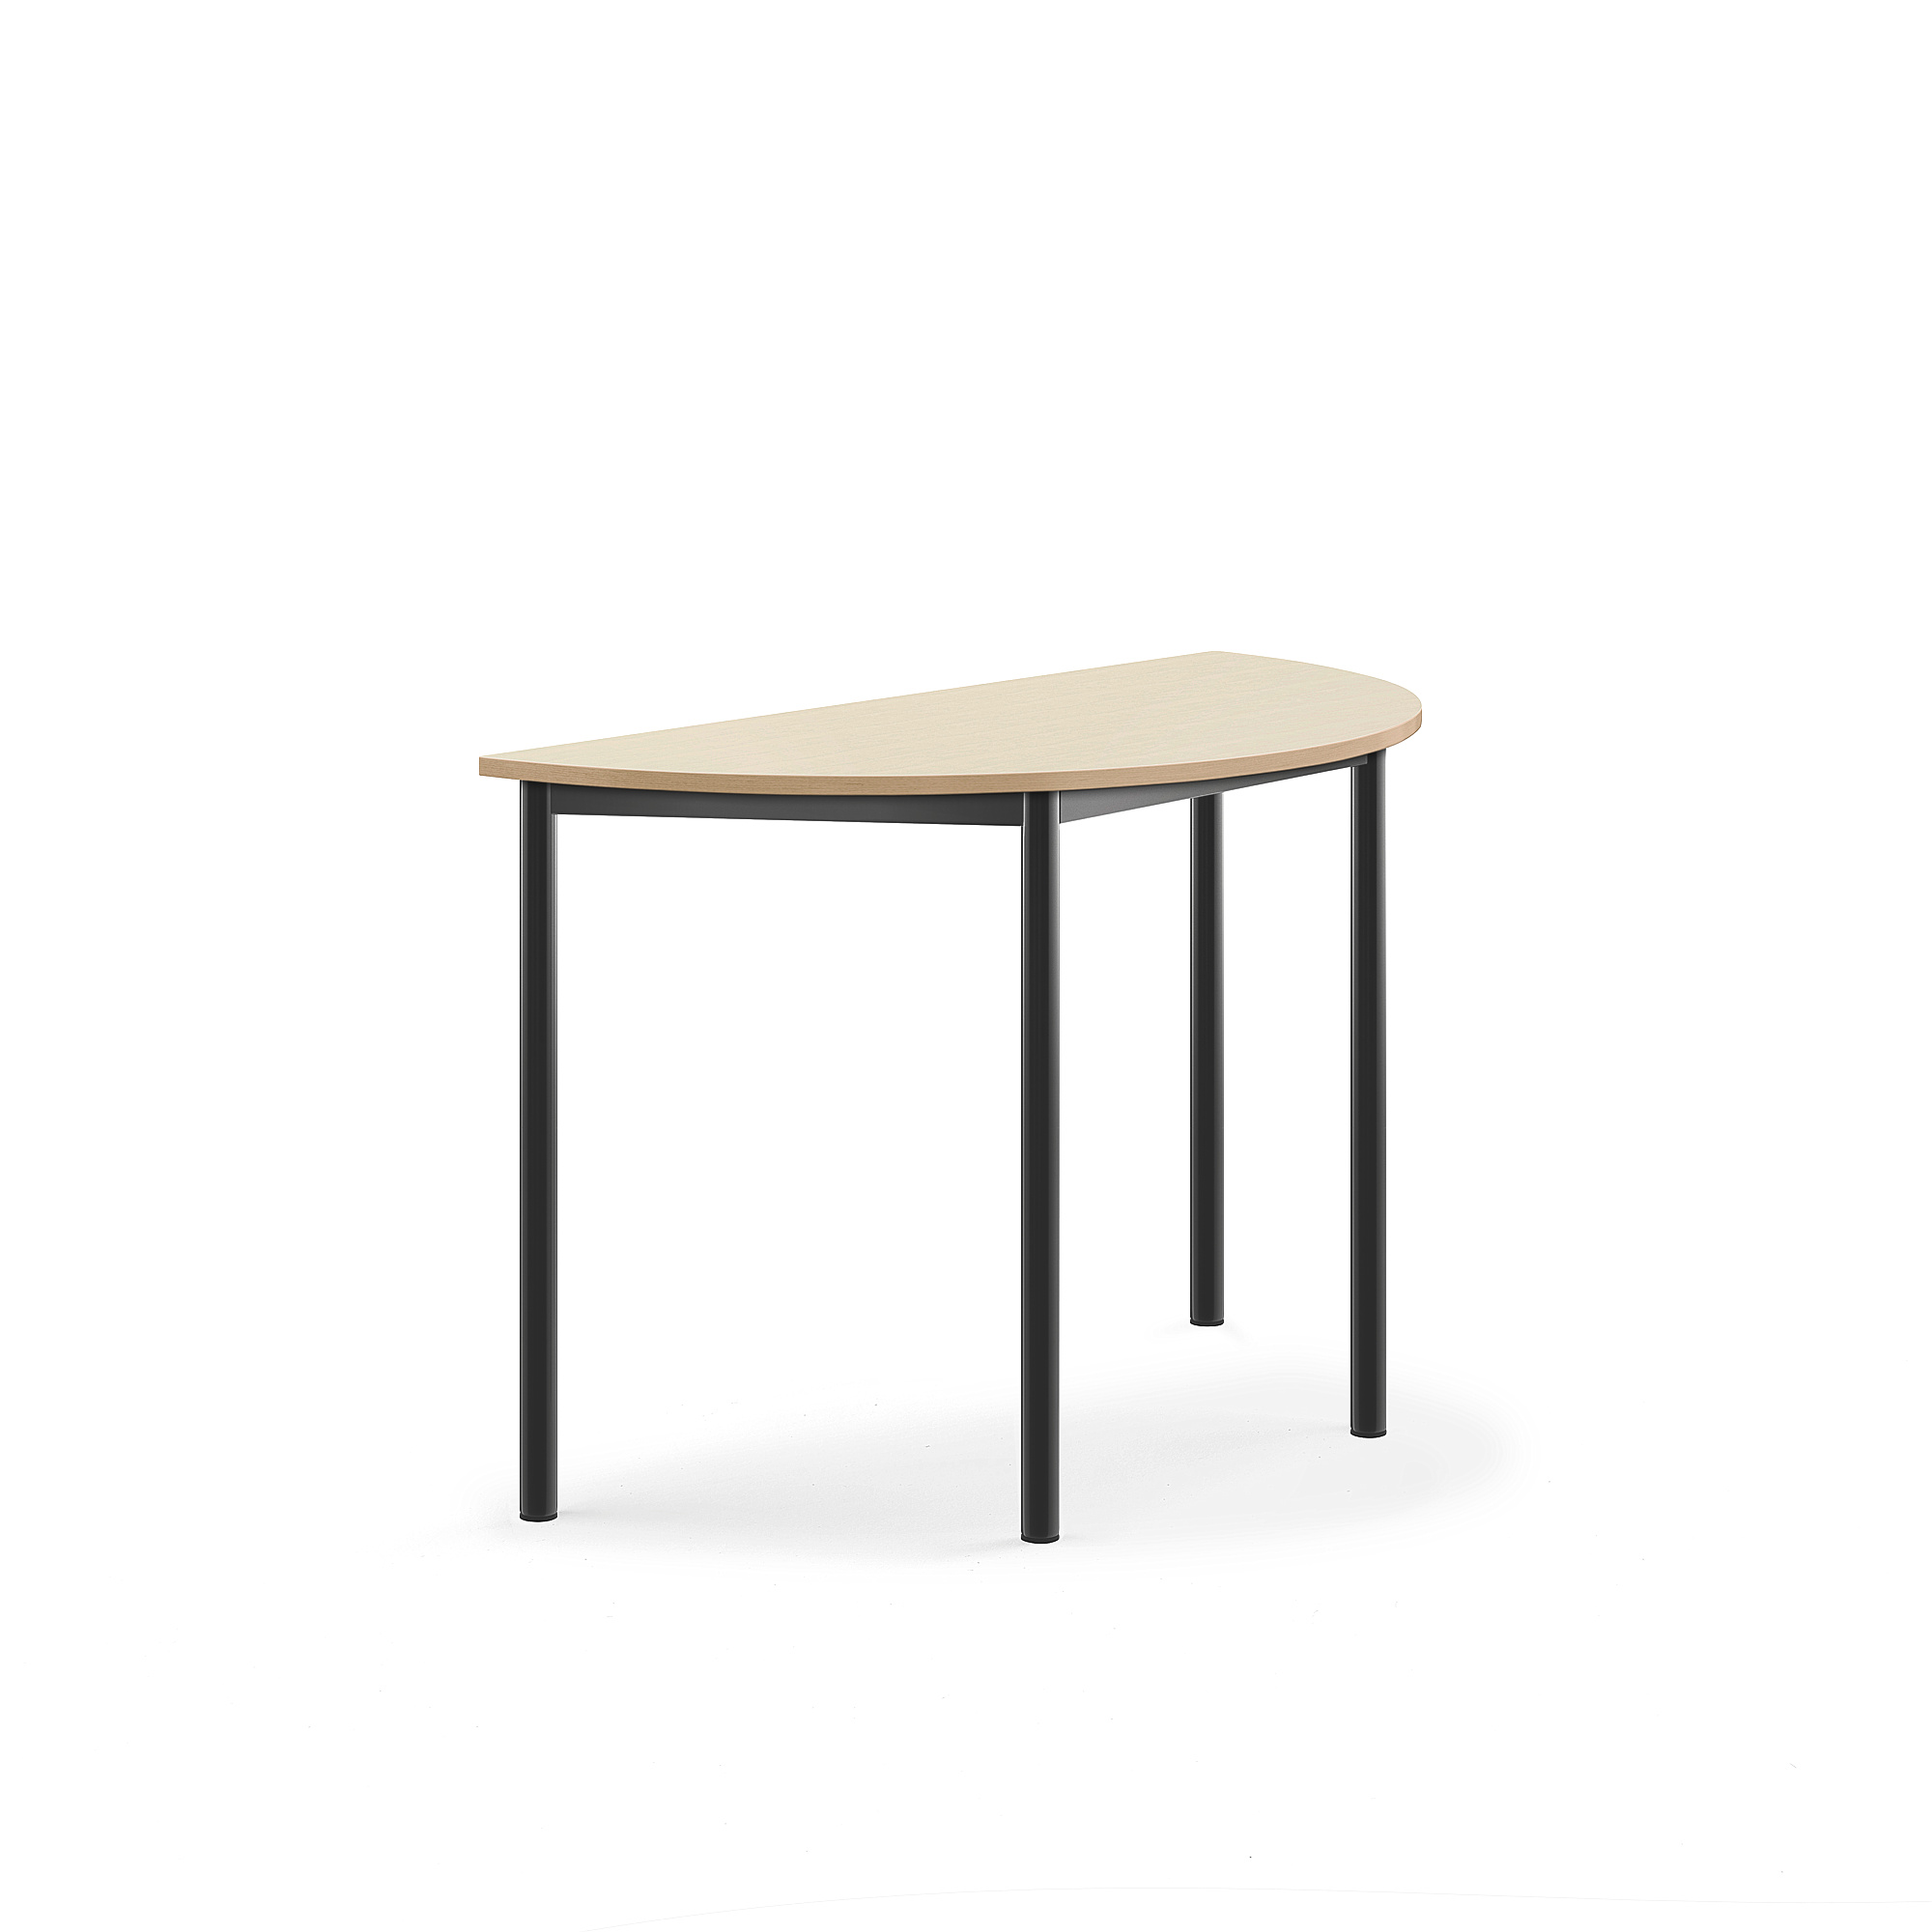 Stůl BORÅS, půlkruh, 1200x600x760 mm, antracitově šedé nohy, HPL deska, bříza